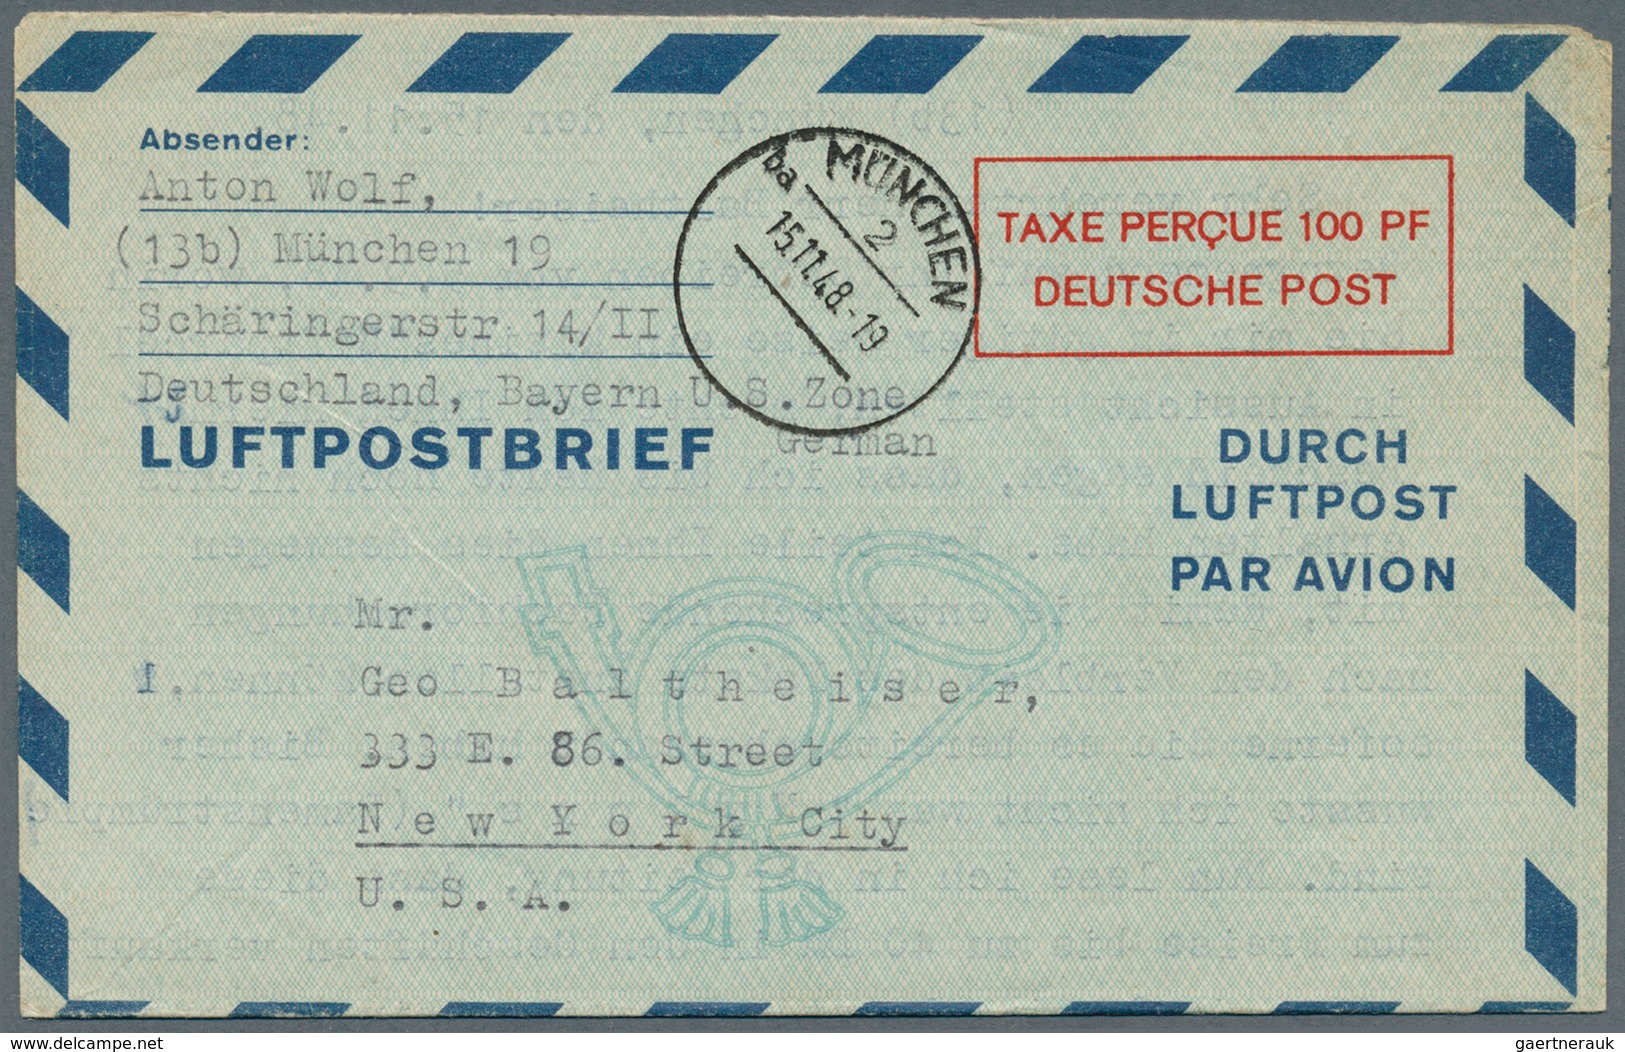 32844 Bundesrepublik - Ganzsachen: 1948/1953 (ca.), mit Bizone. Posten von insgesamt 272 LUFTPOSTFALTBRIEF